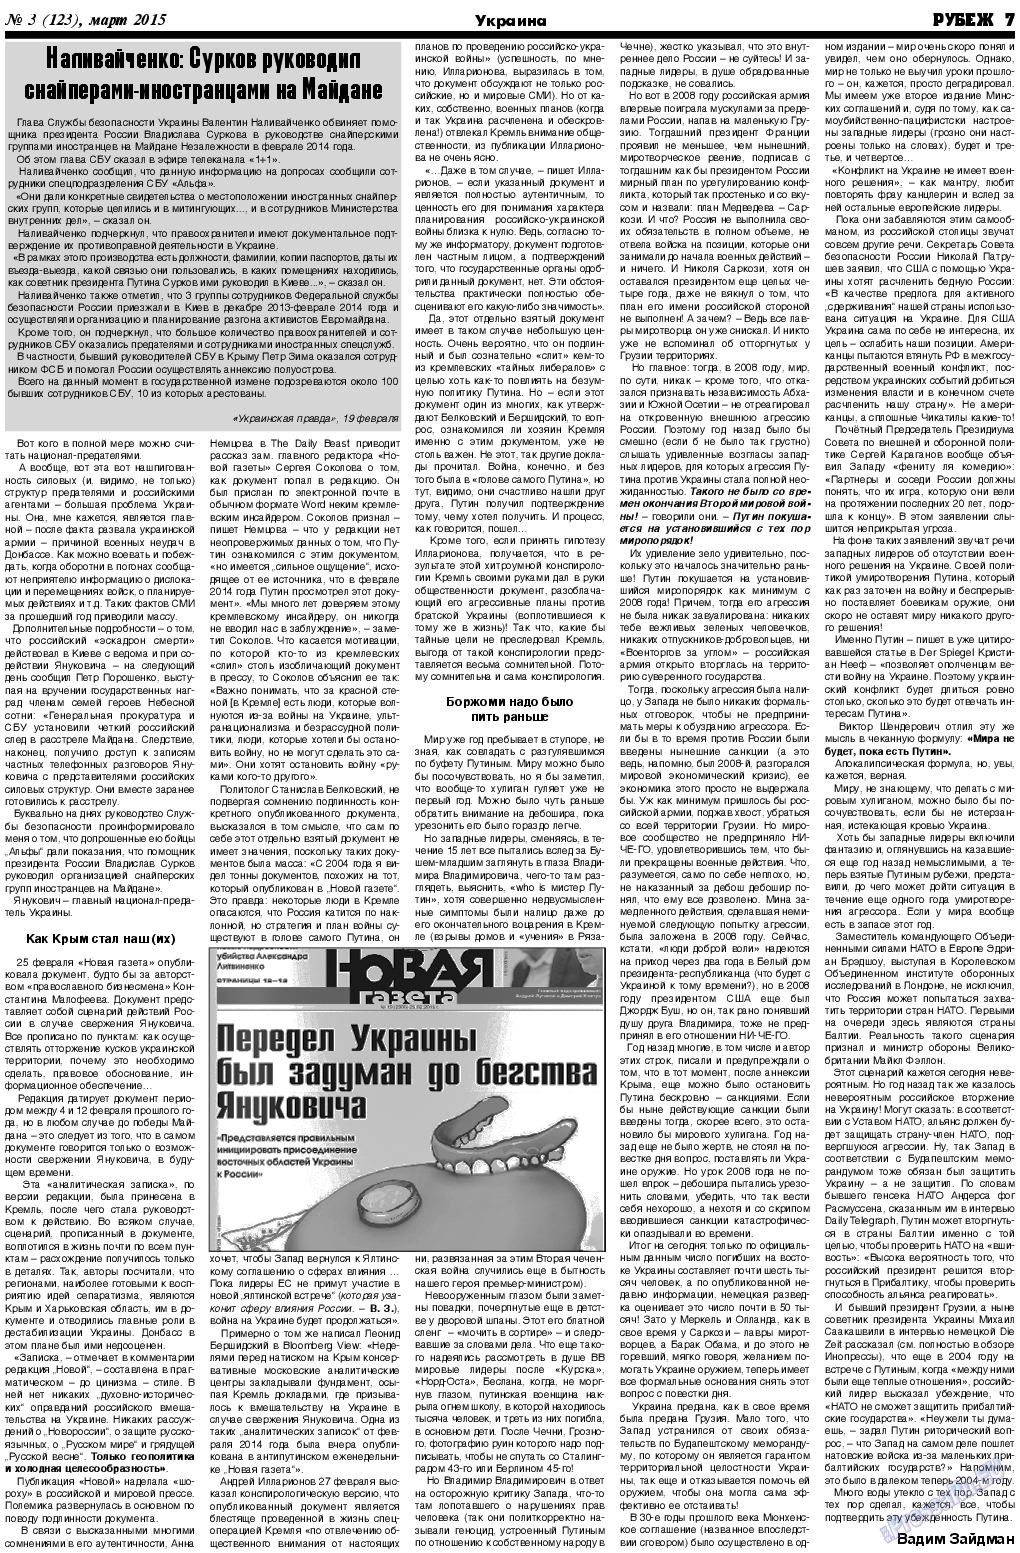 Рубеж (газета). 2015 год, номер 3, стр. 7